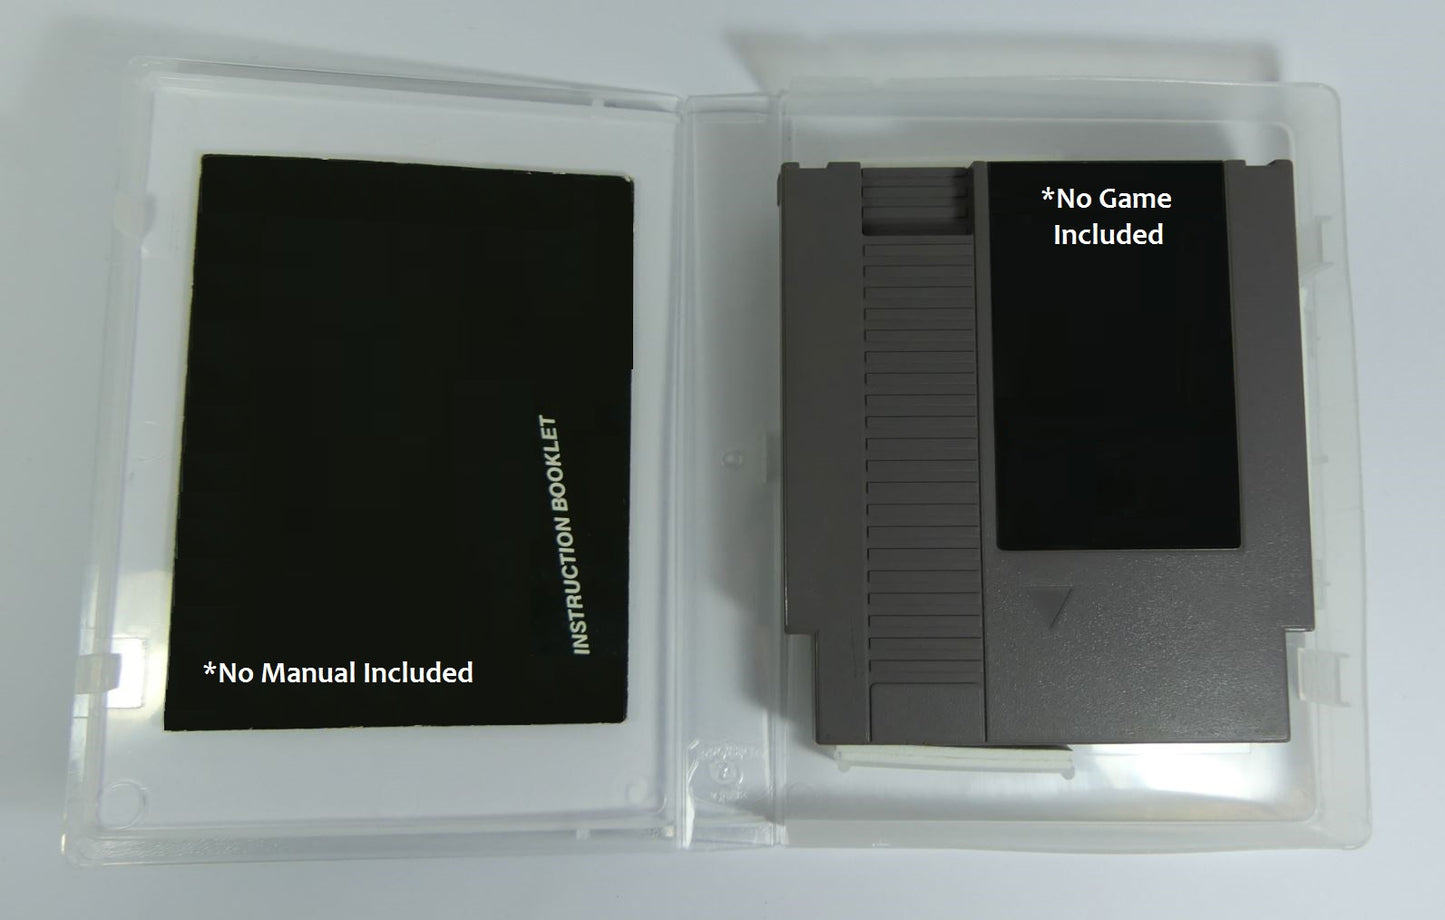 The Goonies II - NES Replacement Case